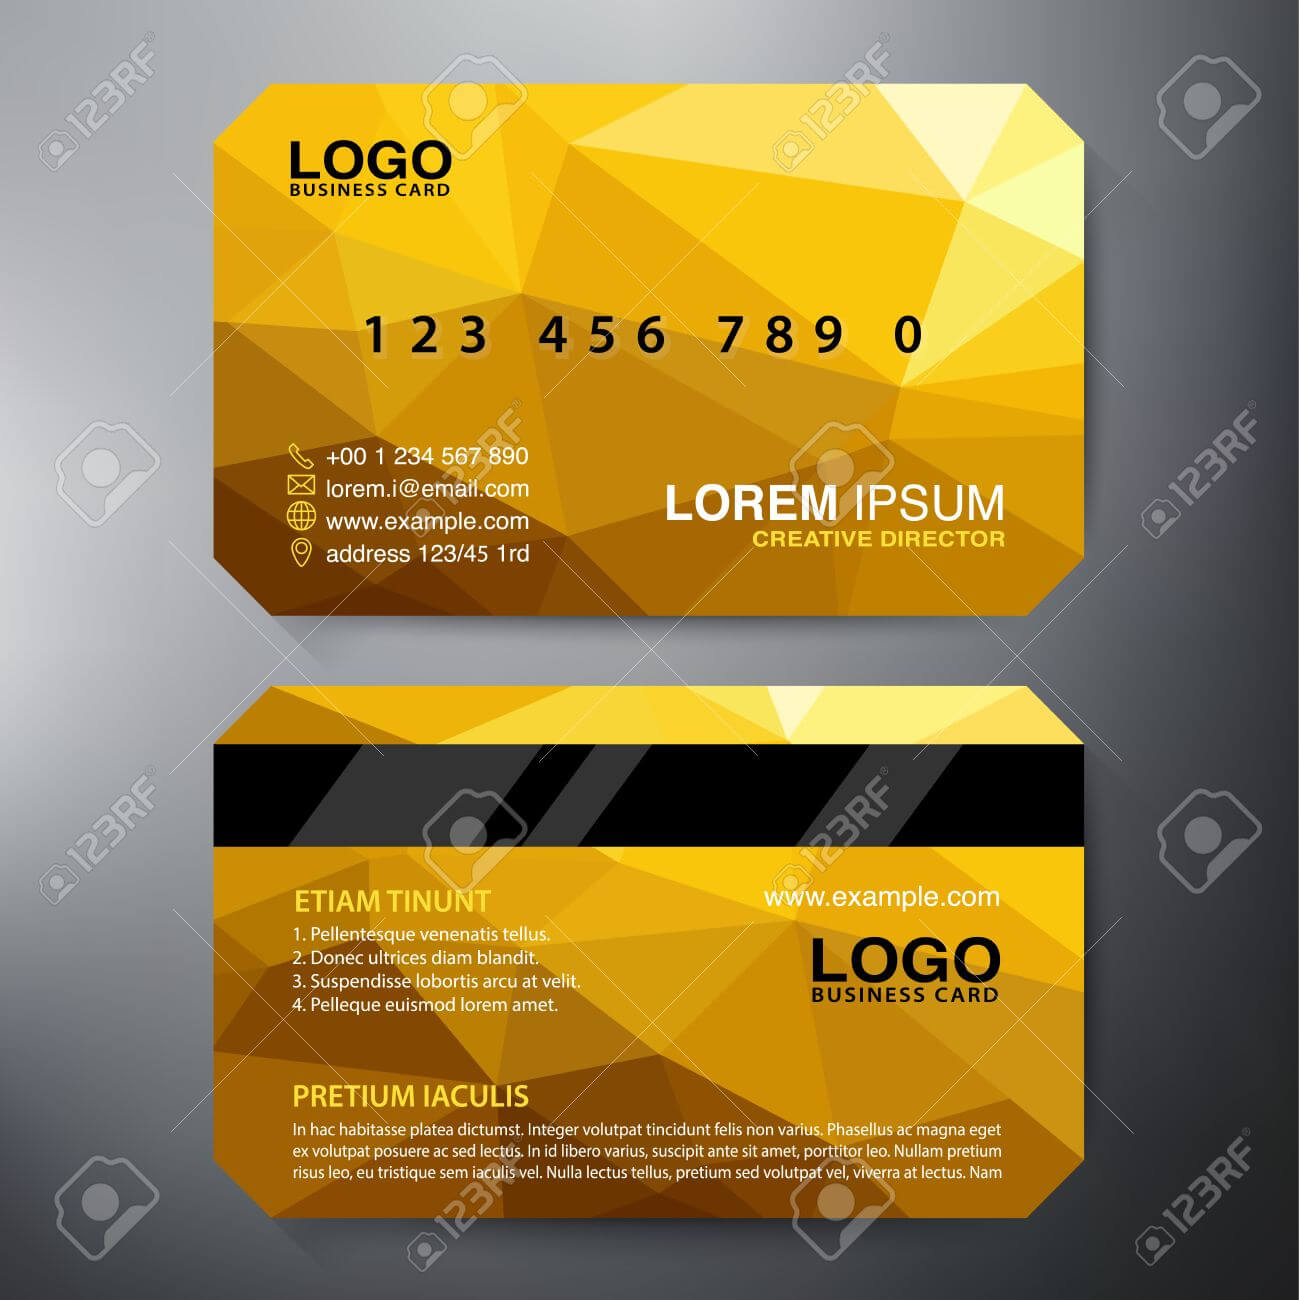 Modern Business Card Design Template. Vector Illustration For Modern Business Card Design Templates